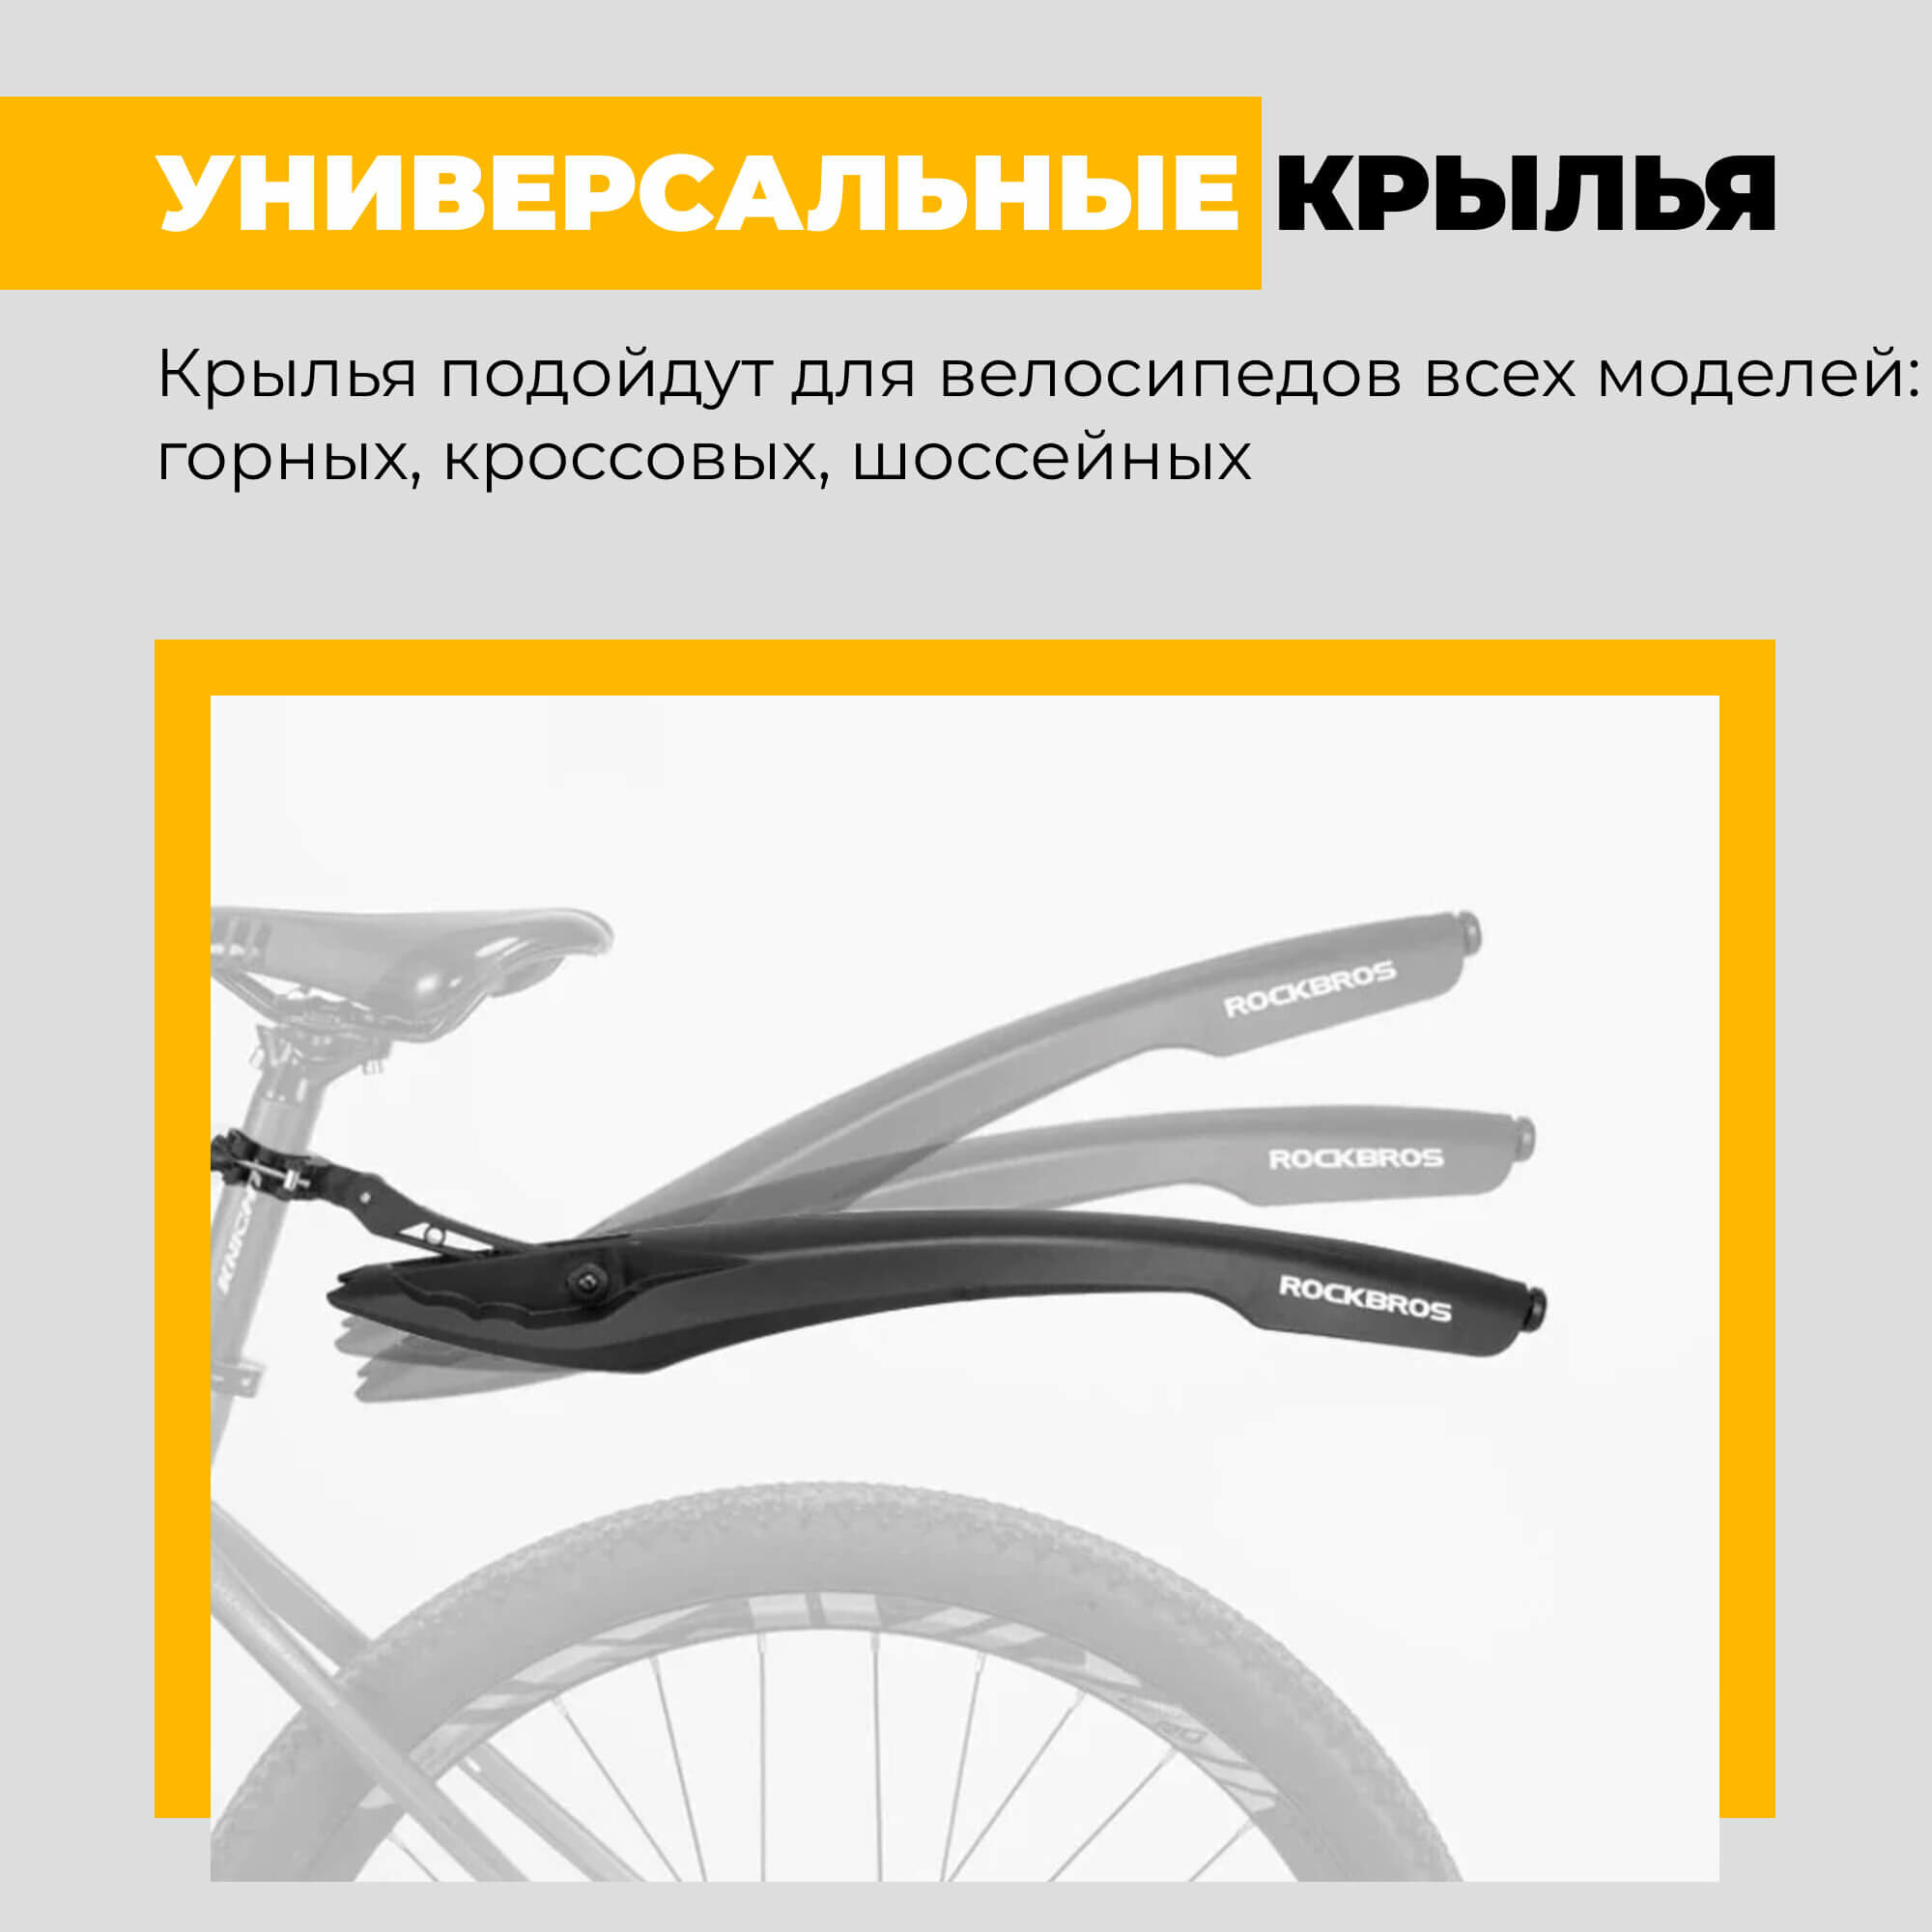 Комплект крыльев для велосипеда